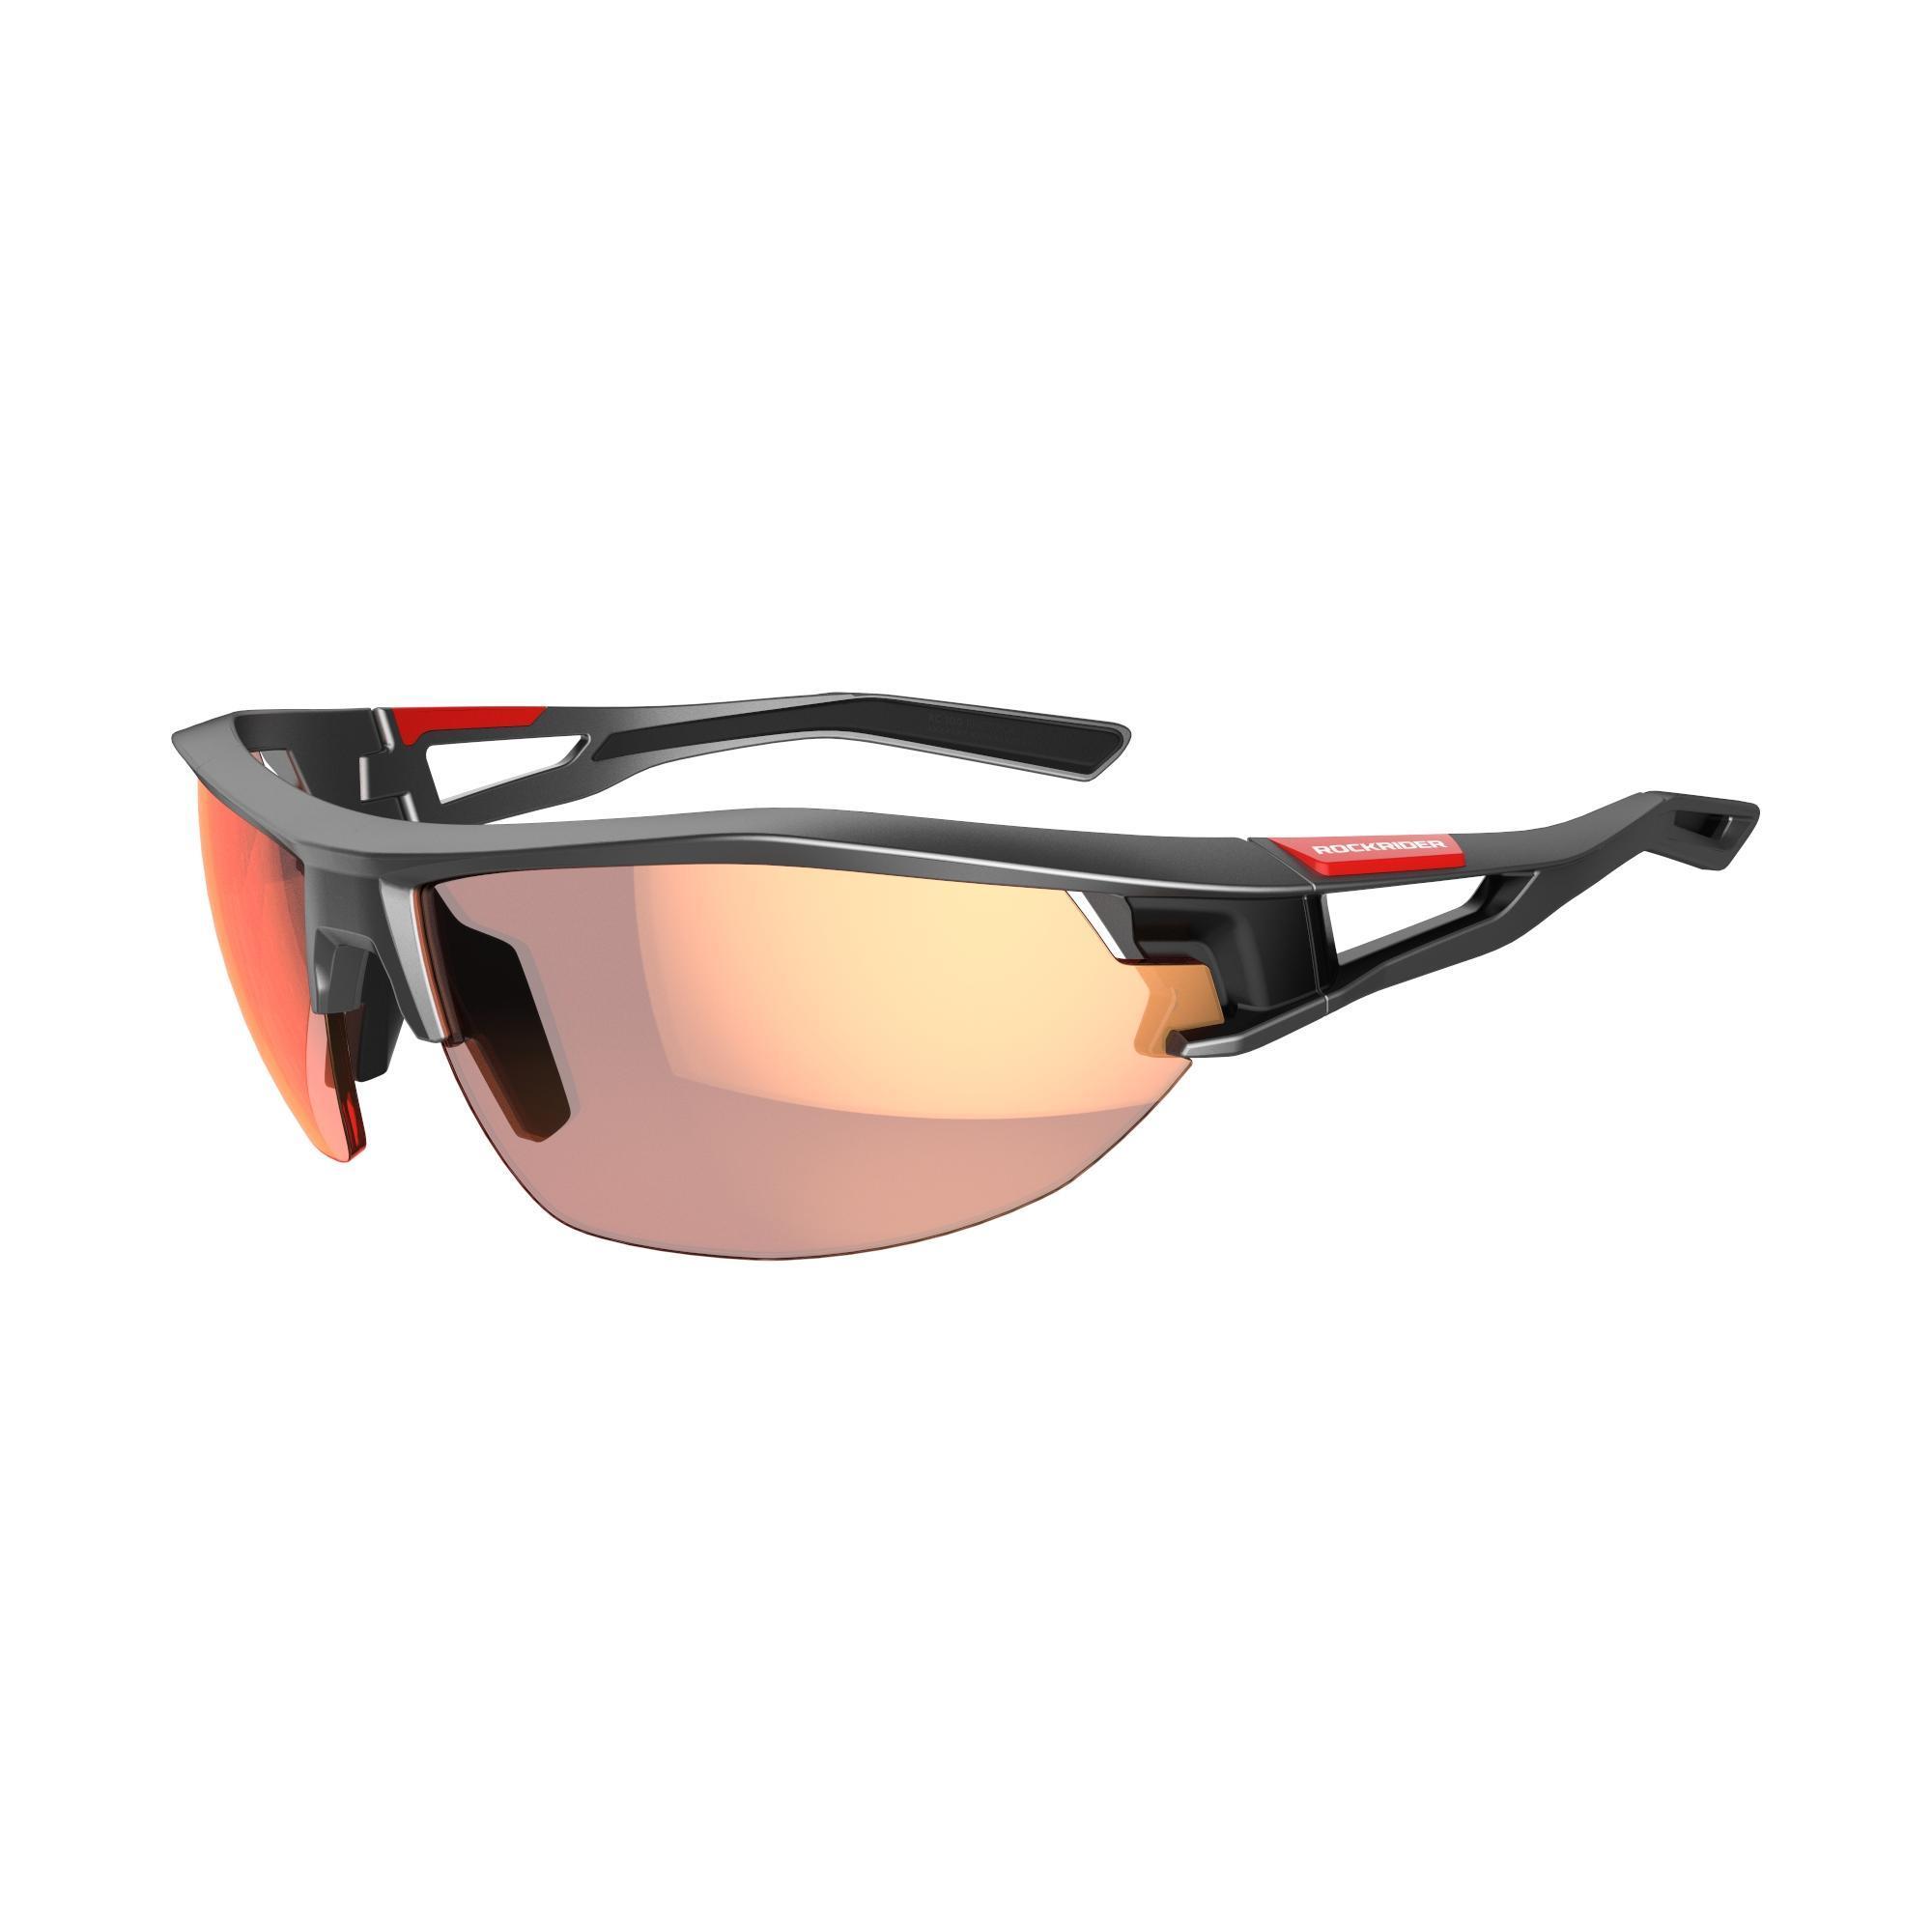 Leichte Sportbrille Radbrille Damen Herren Unisex 100% UV-Schutz orange getönt 